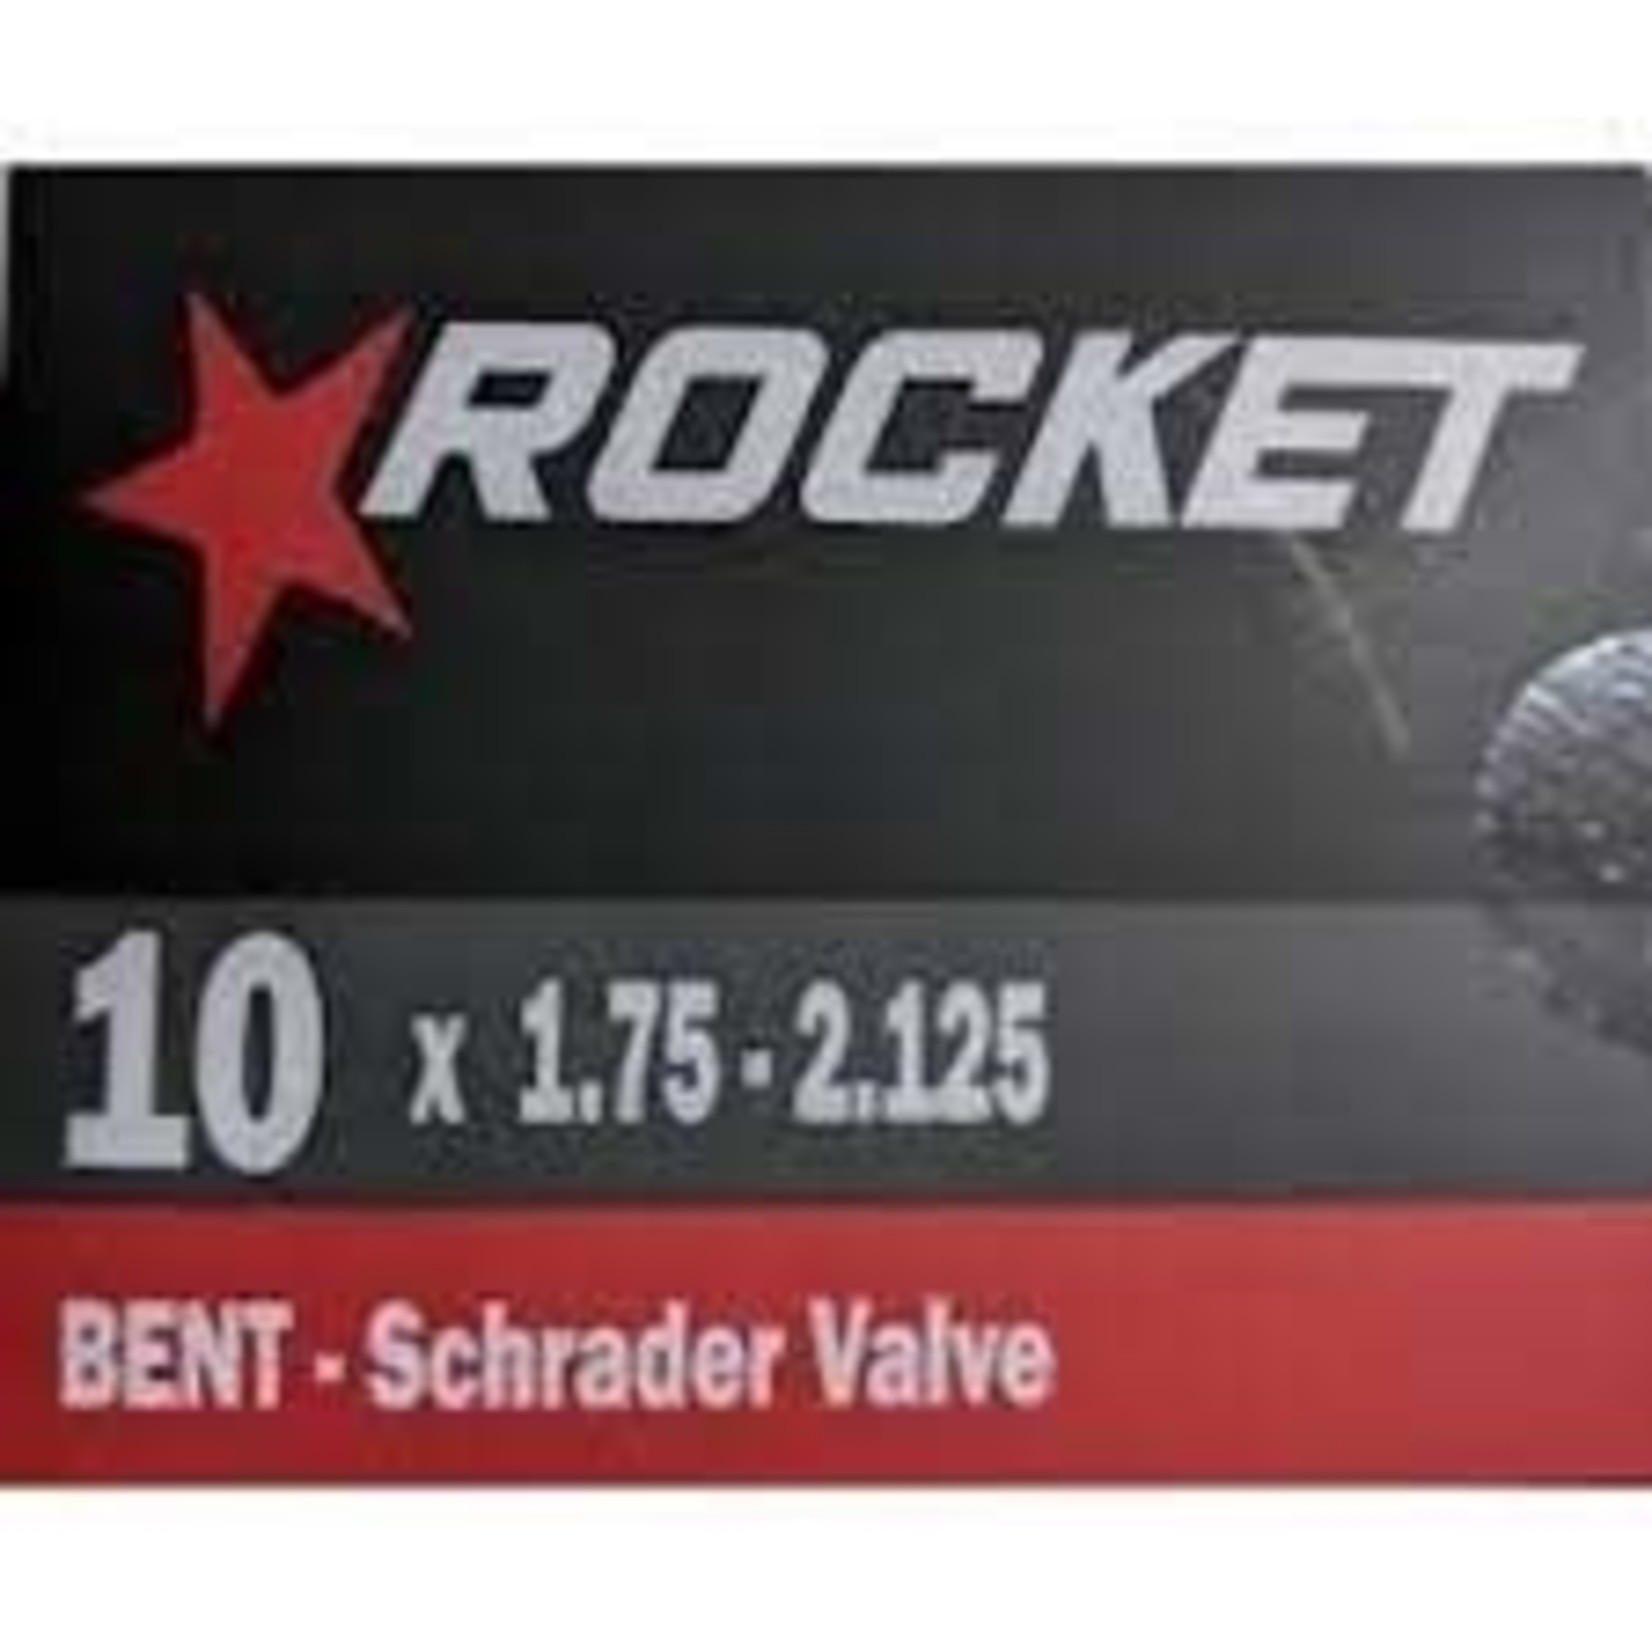 Rocket ROCKET 10 x 1.75 - 2.125 B/V - S/V